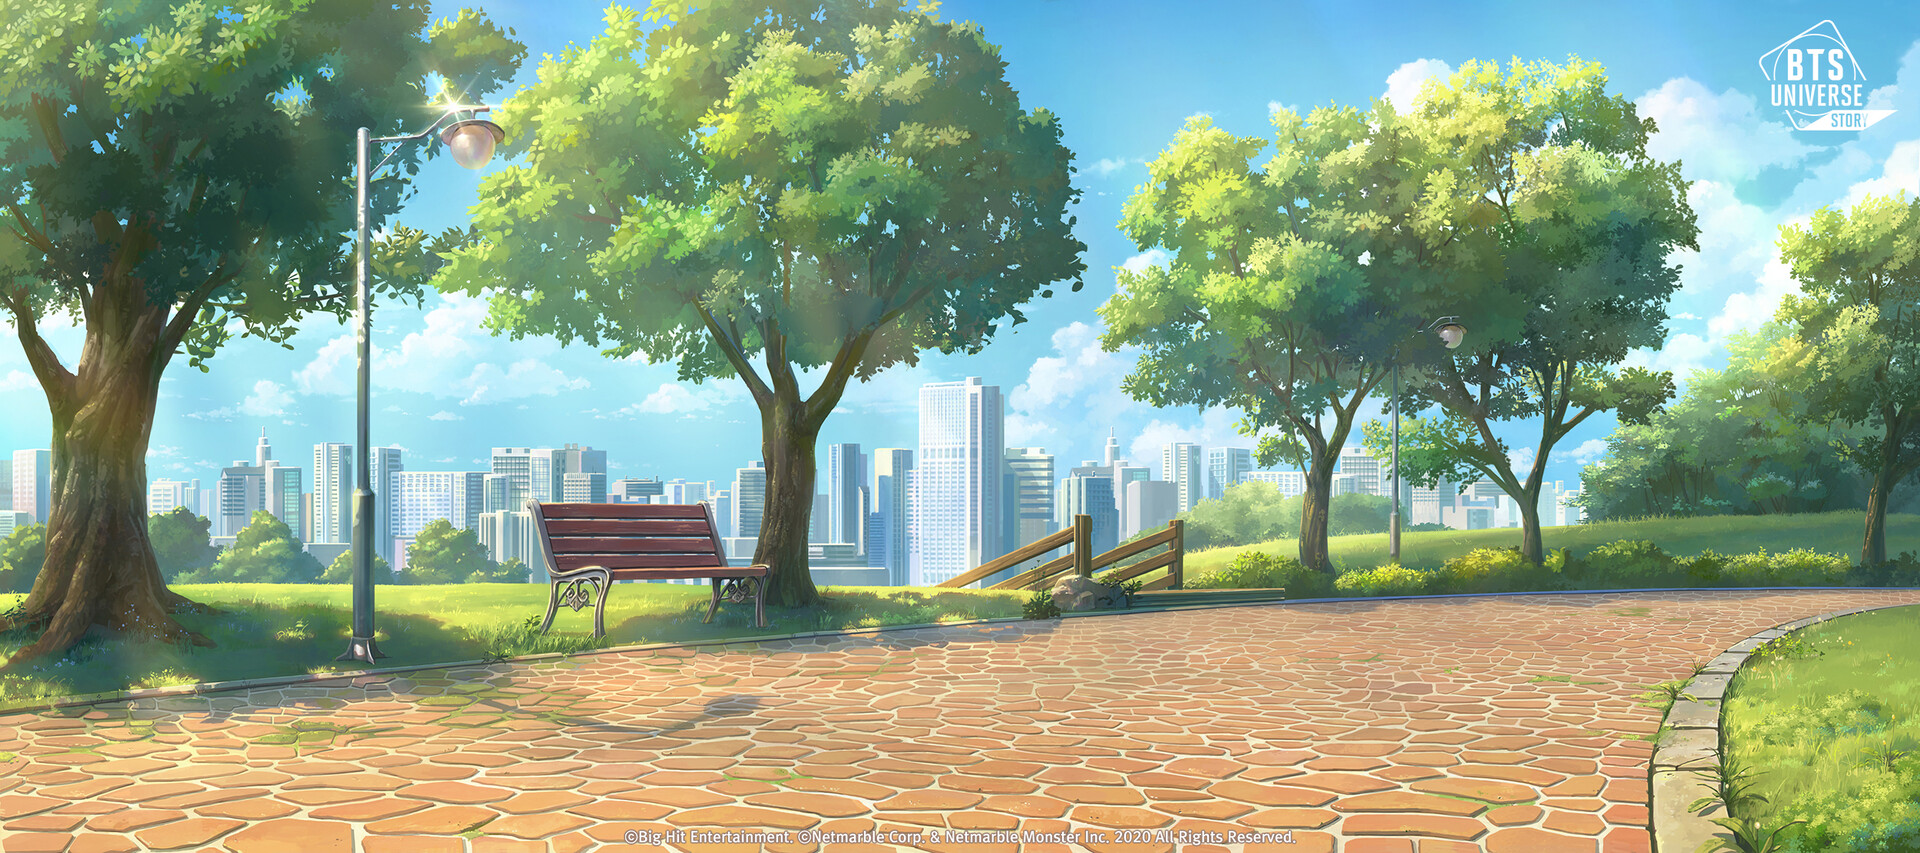 Anime Park Background  EPS Illustrator SVG  Templatenet